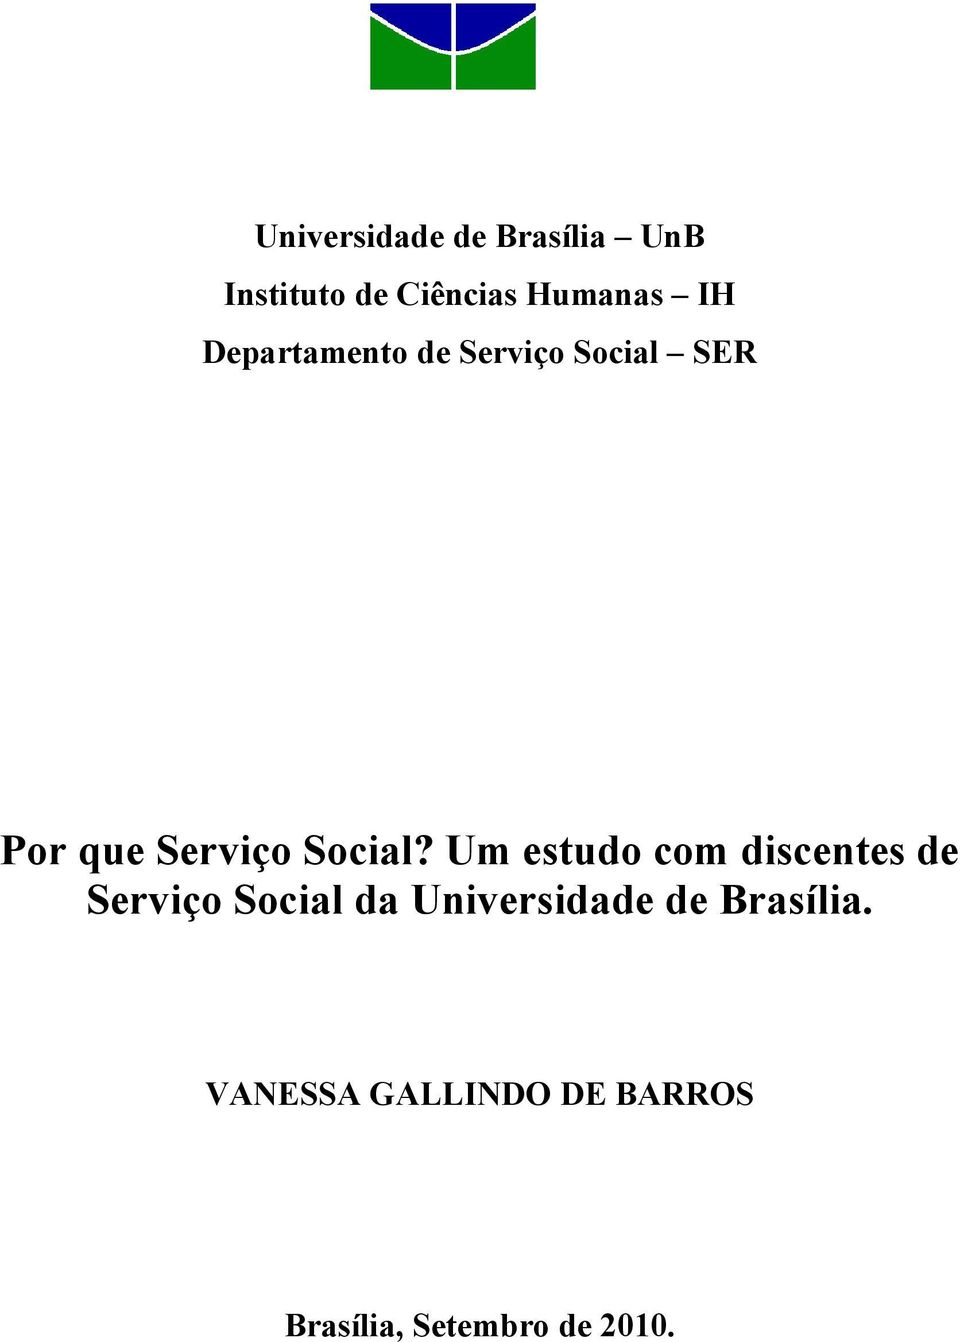 Um estudo com discentes de Serviço Social da Universidade de